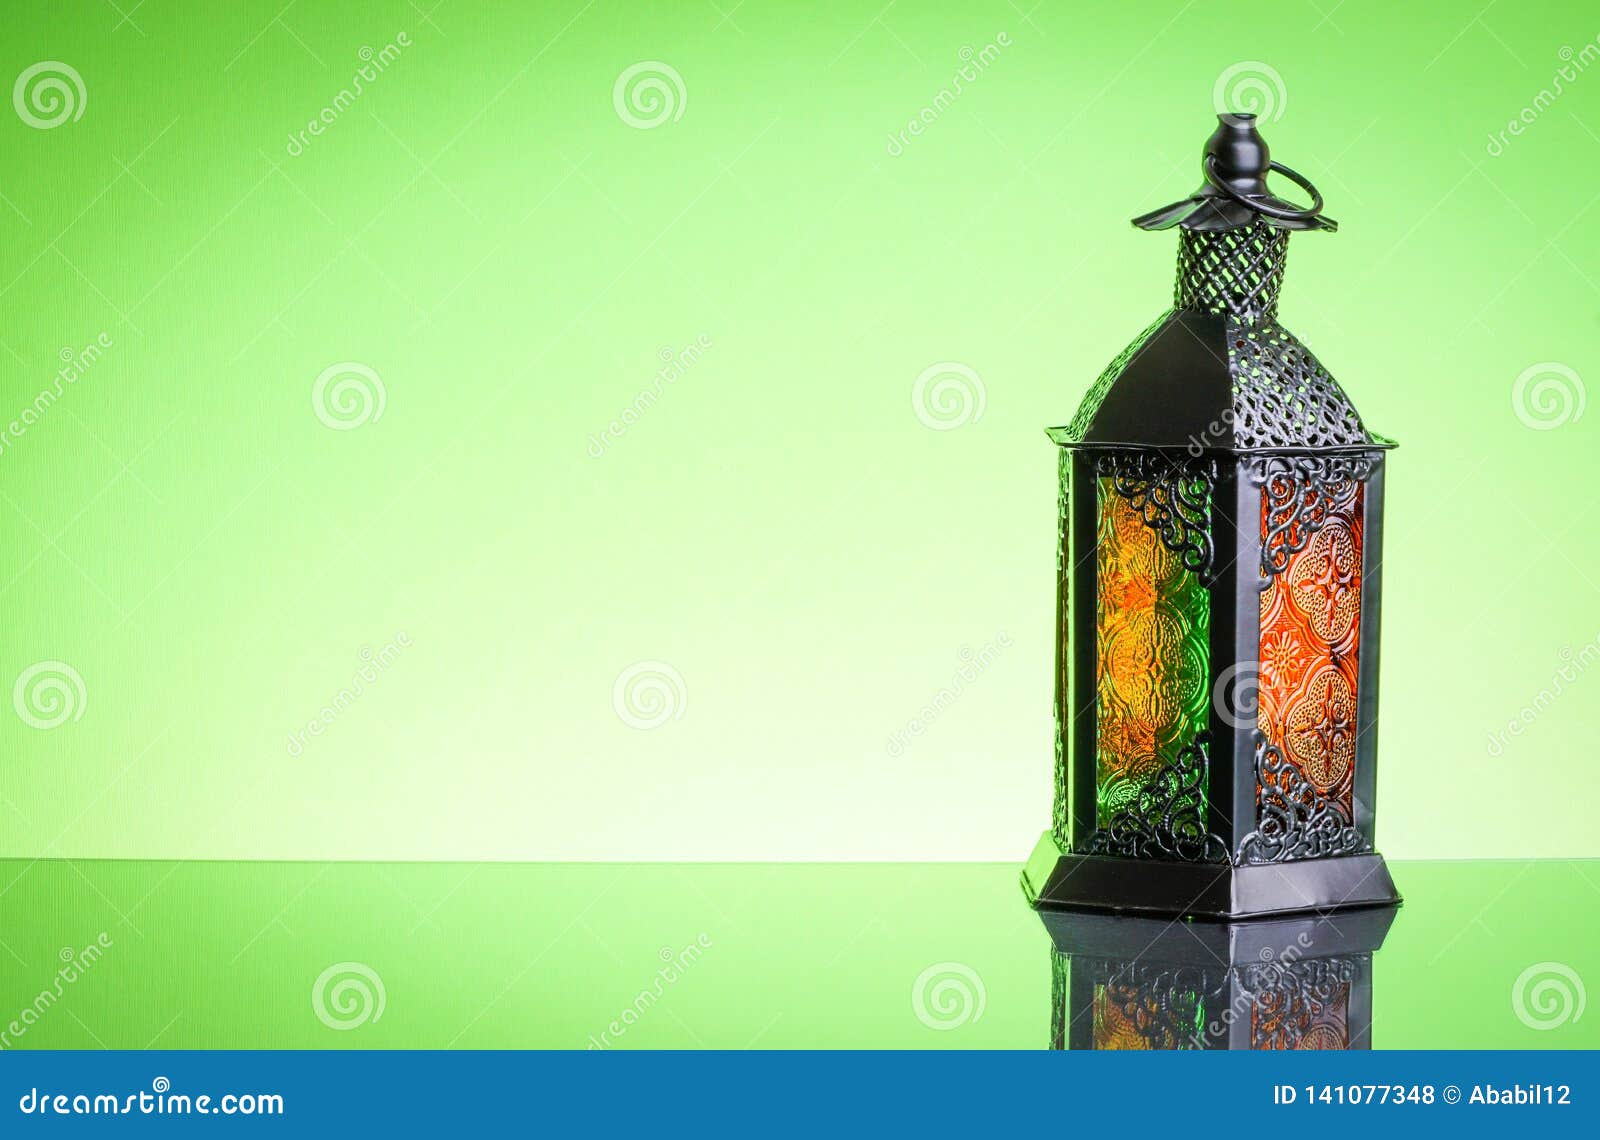 Sự kết hợp của đèn Ramadan trang trí và nền màu xanh làm cho không gian cực kì trang trọng và lung linh. Hãy xem qua những hình ảnh này để cảm nhận sự trang trọng và đẳng cấp mà lễ hội Ramadan mang lại. Đèn trang trí phù hợp với nền xanh và hoa văn Ả Rập tạo nên một cảm giác ấm áp và thú vị.